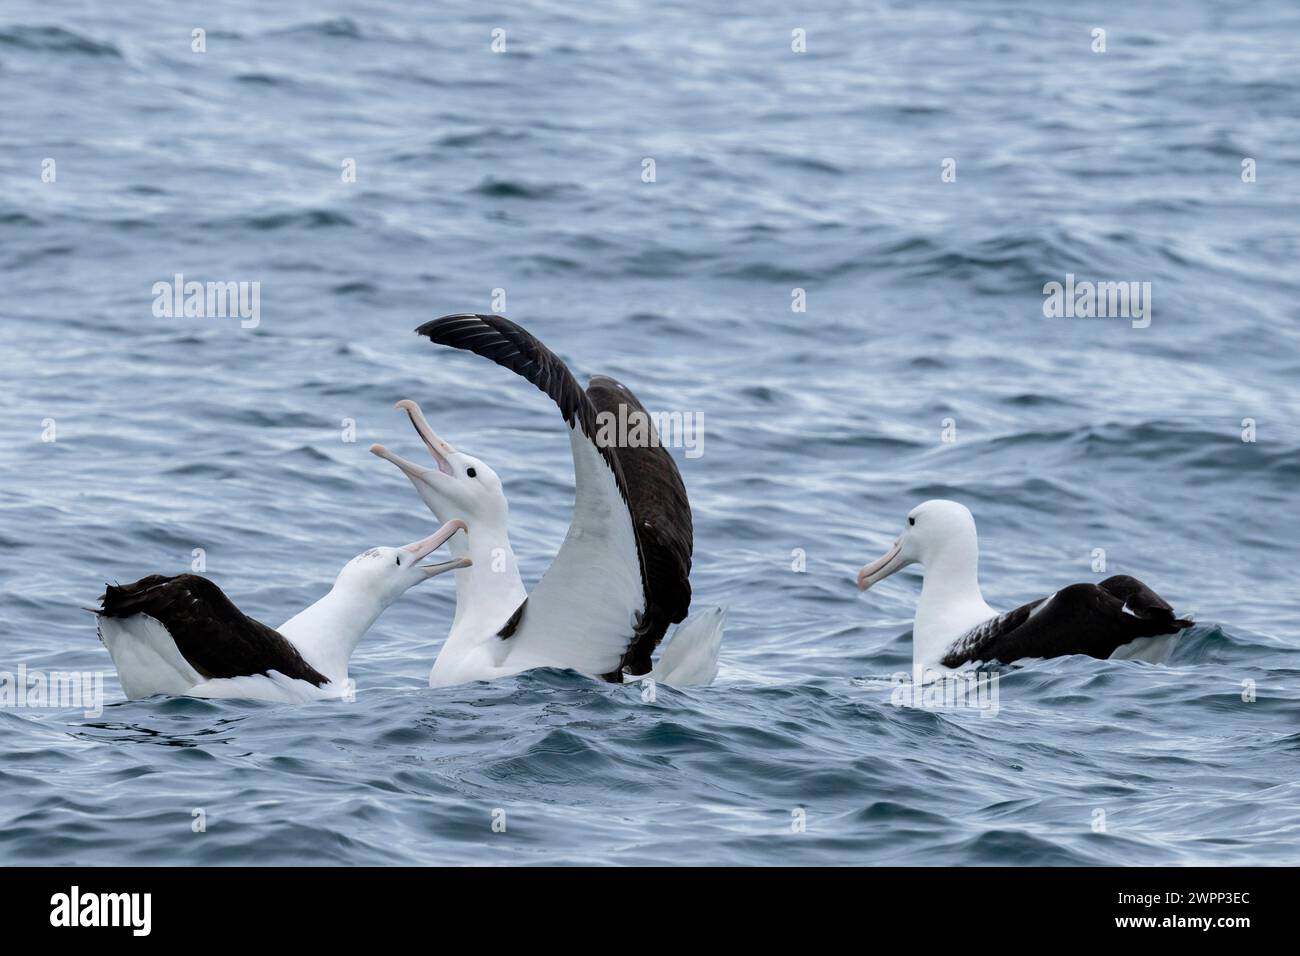 Nuova Zelanda, Isola del Sud, Dunedin, Penisola di Otago, Capo Taiaroa. Northern Royal Albatross (Diomedea sanfordi) socializzando sull'acqua. Foto Stock